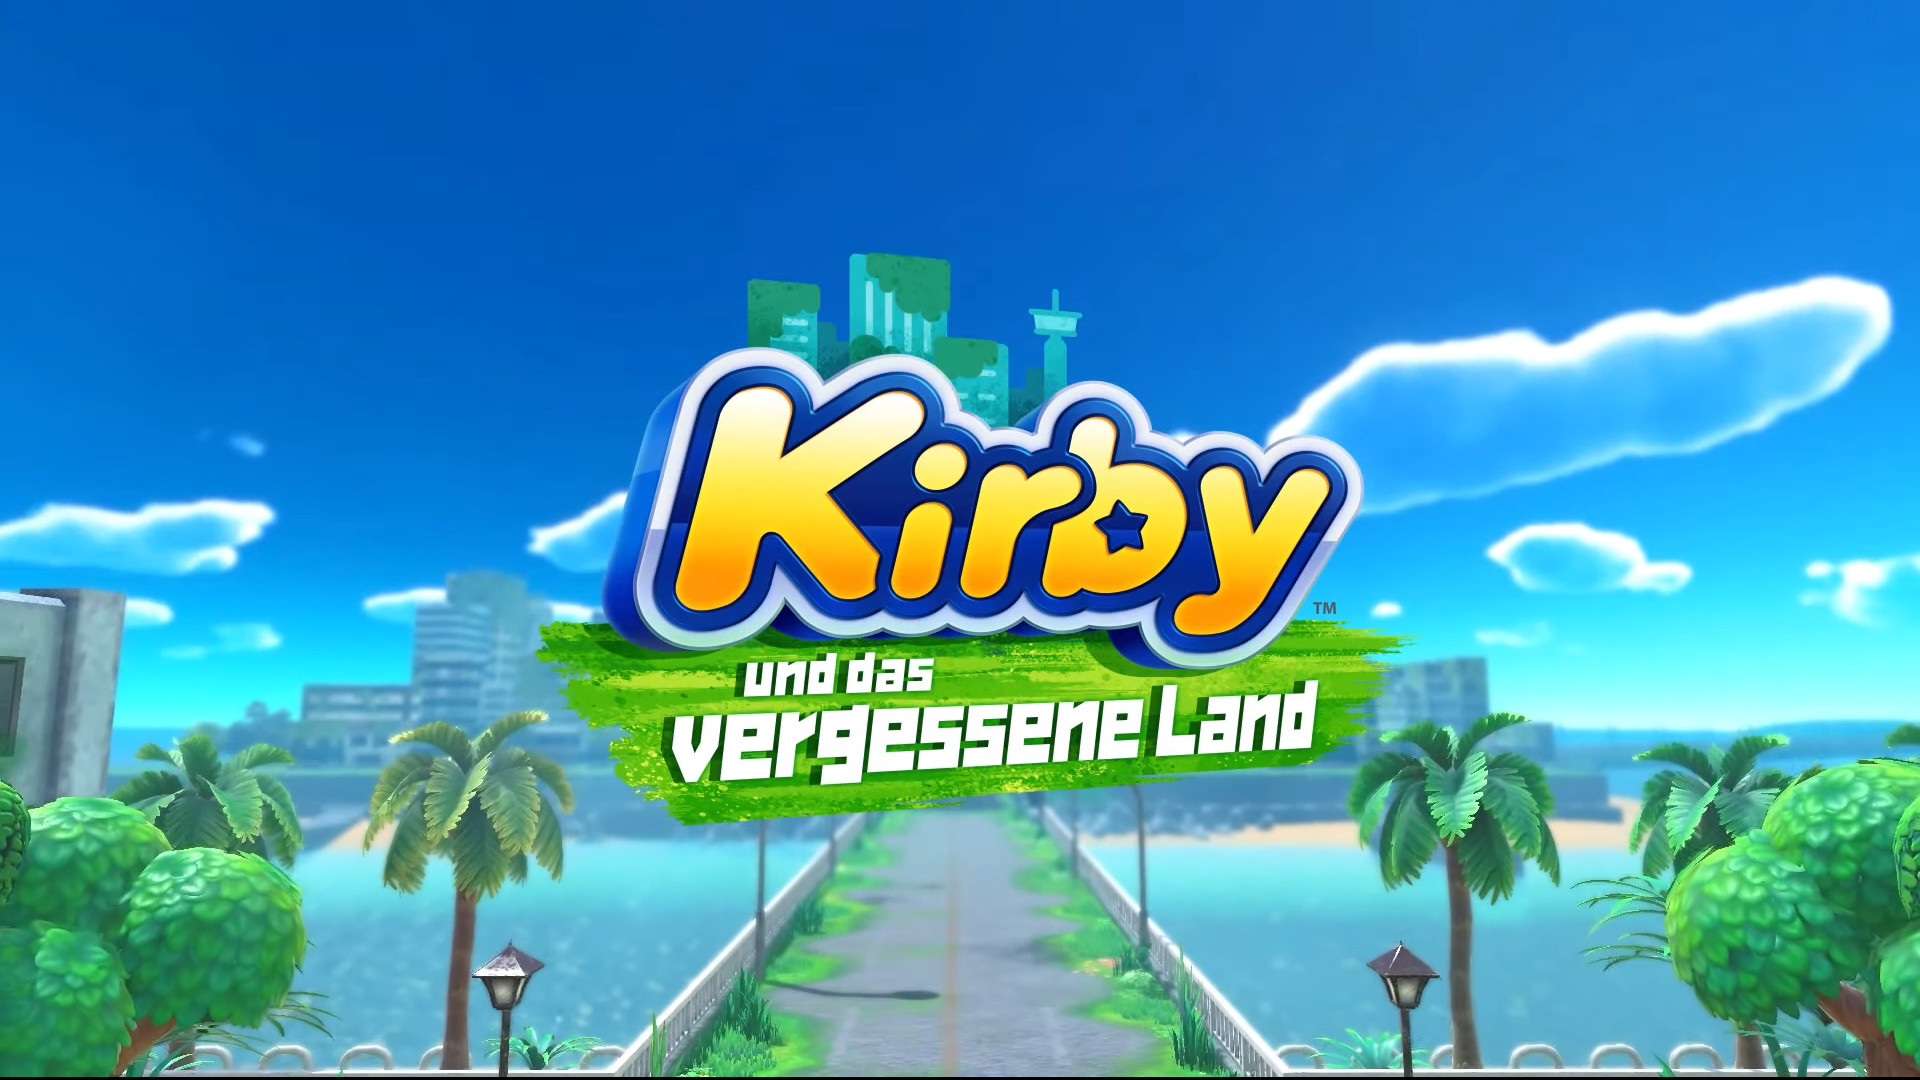 mit NAT-Games - und das Kirby Bonus-Items Codes diesen - Sichert Land vergessene zahlreiche euch